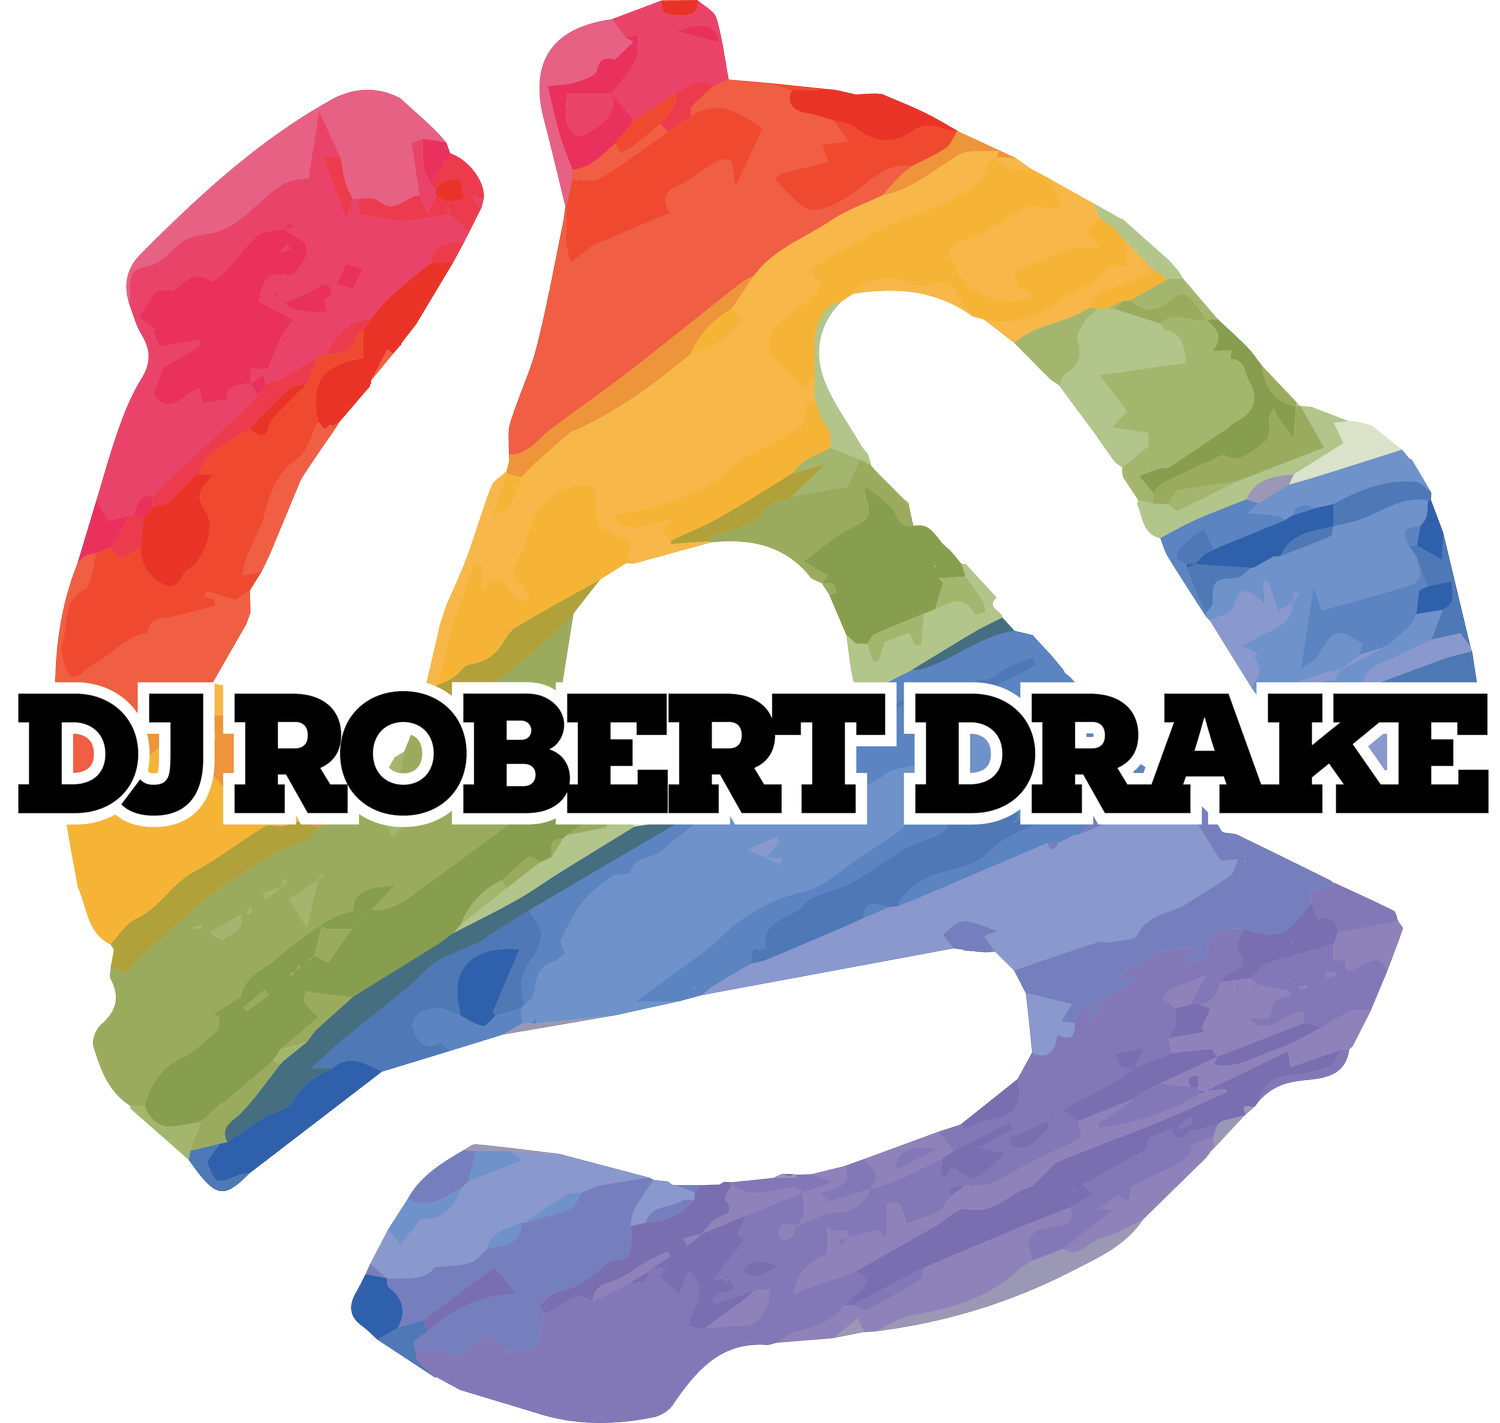 DJ Robert Drake